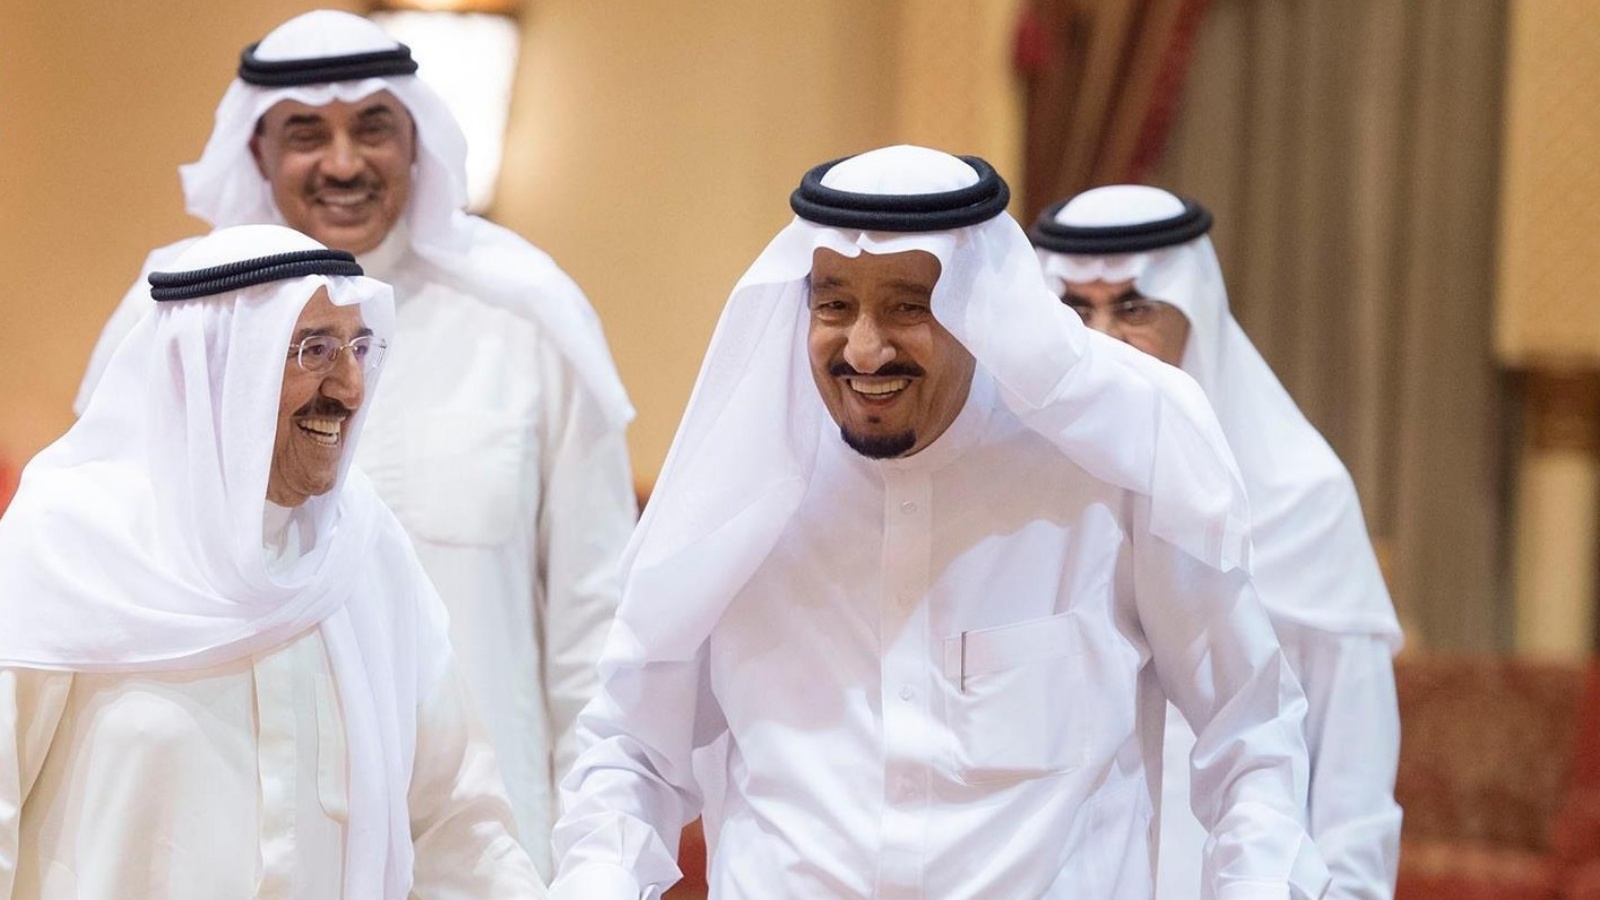 المملكة العربية السعودية تشارك دولة الكويت حكومةً وشعبًا احتفالاتها بمناسبة اليوم الوطني الـ 63